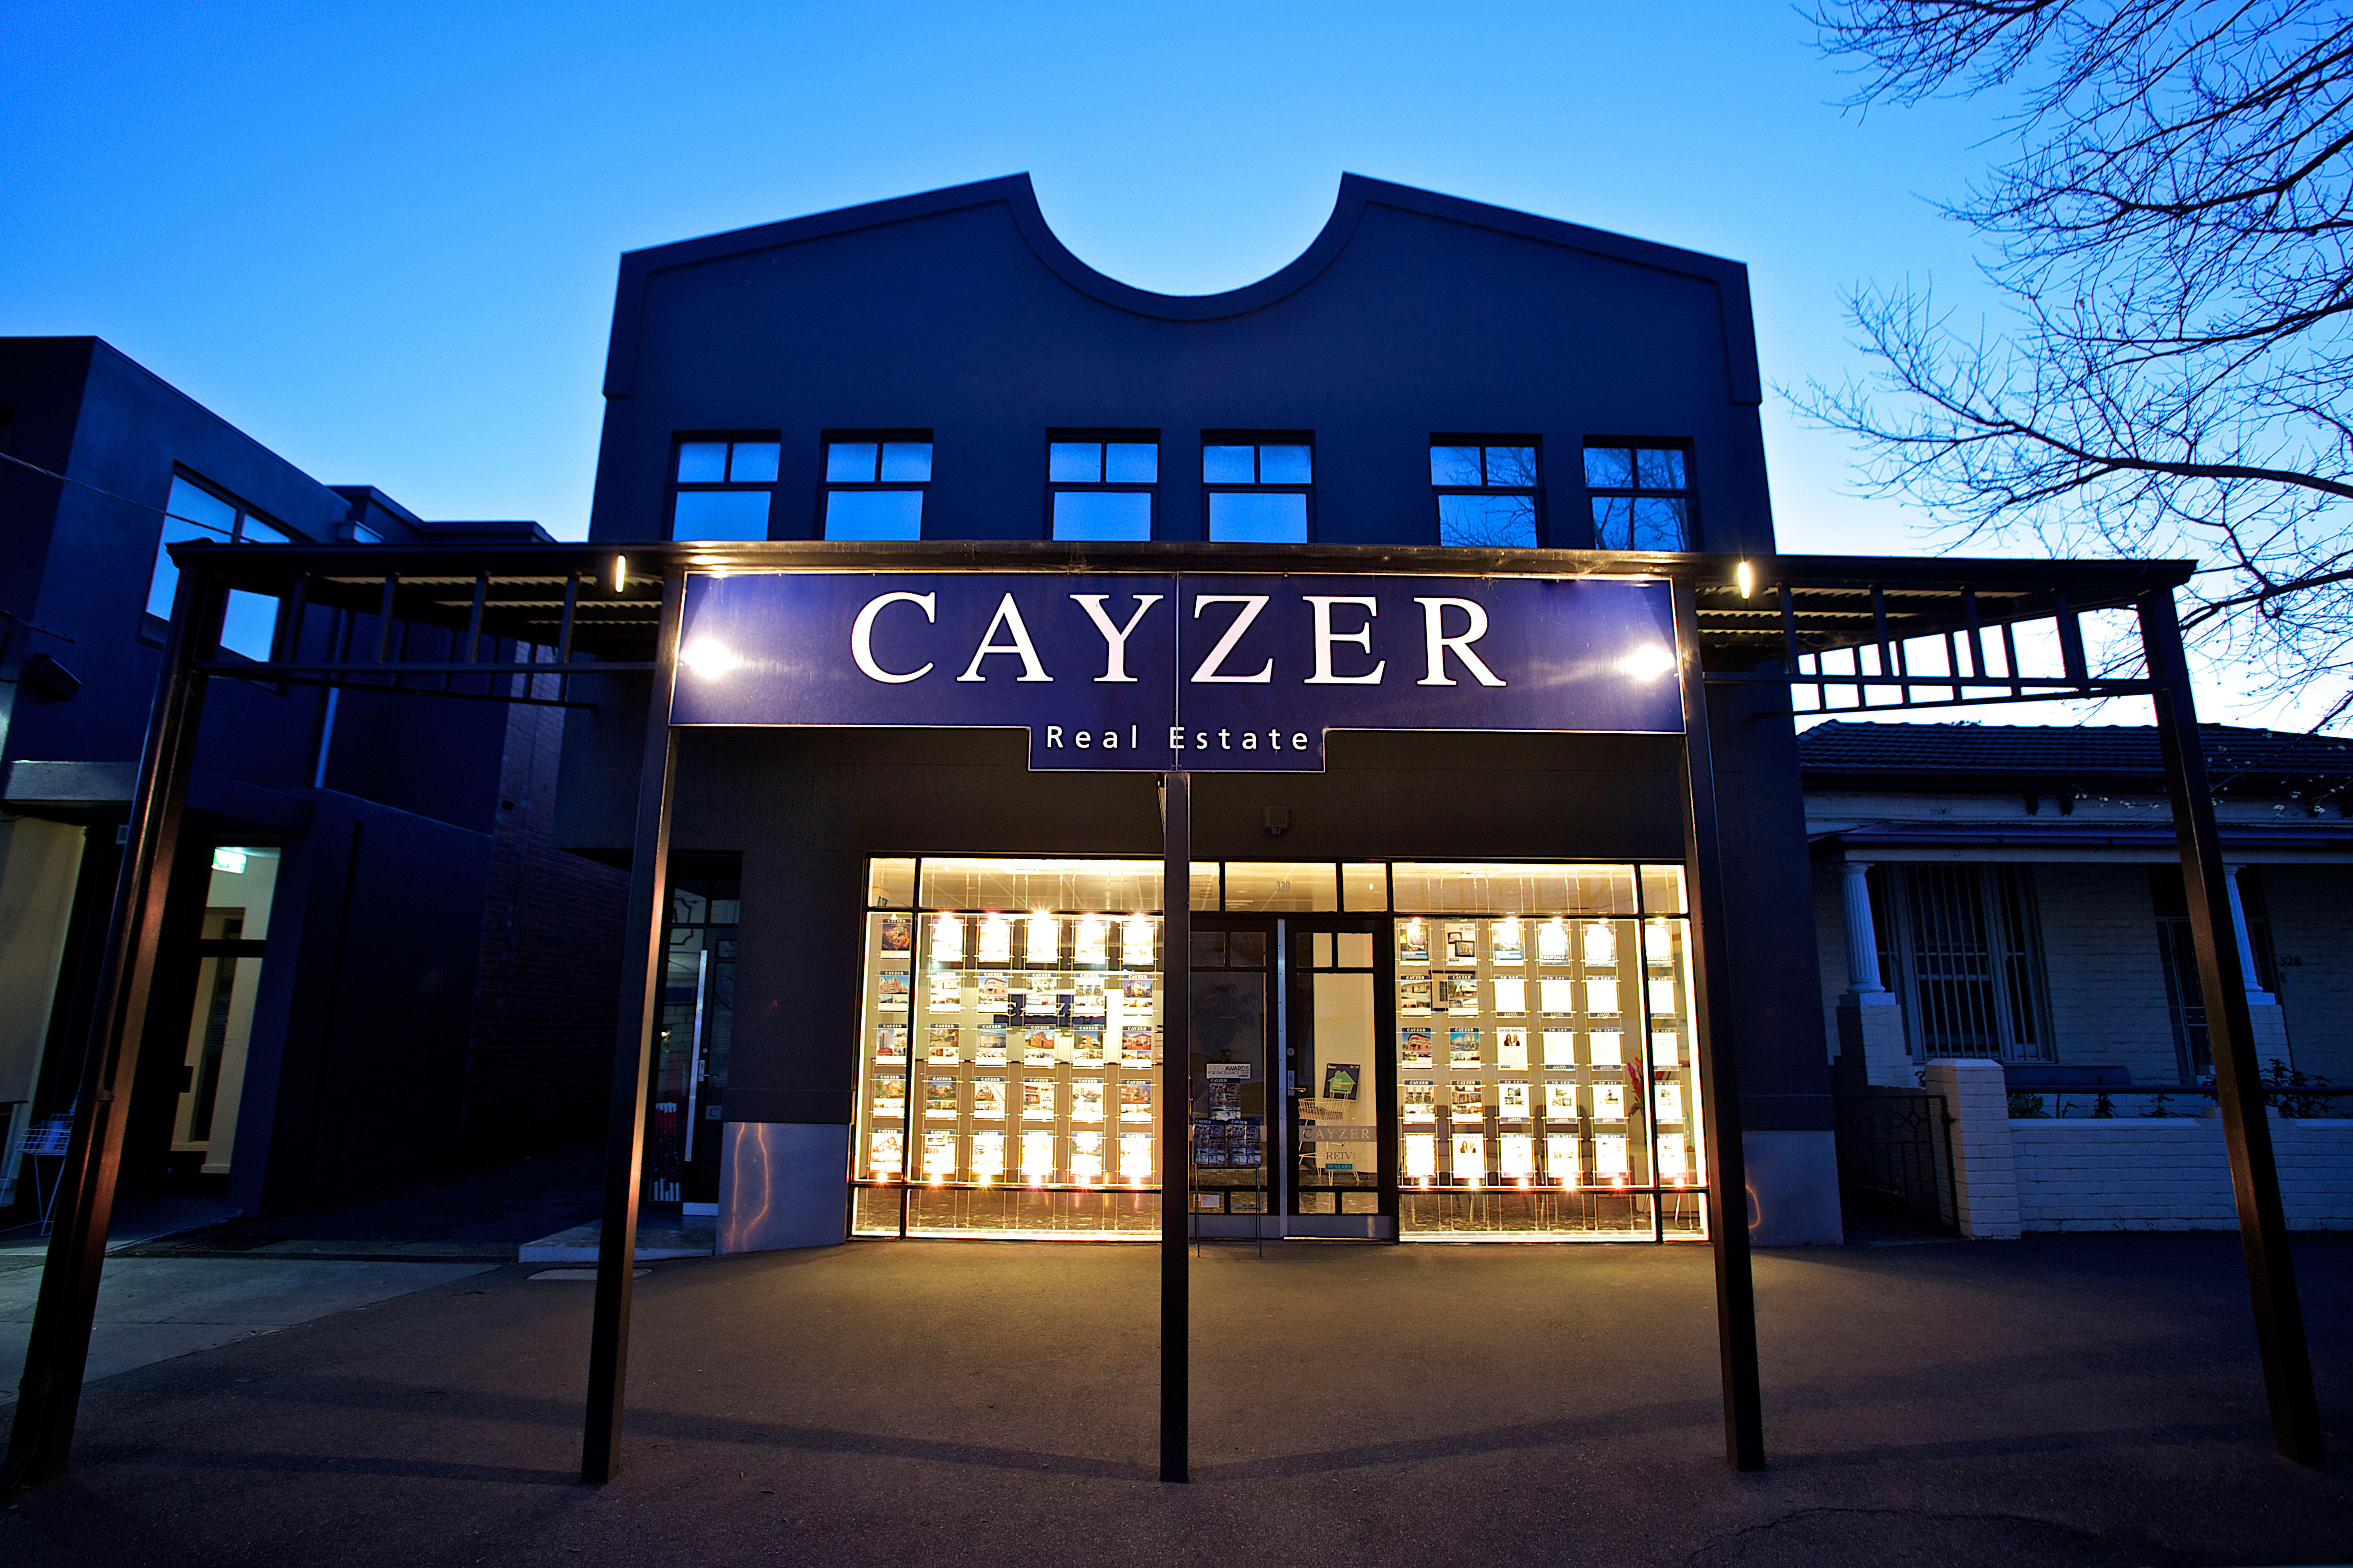 Cayzer Real Estate Port Melbourne (03) 9646 0812